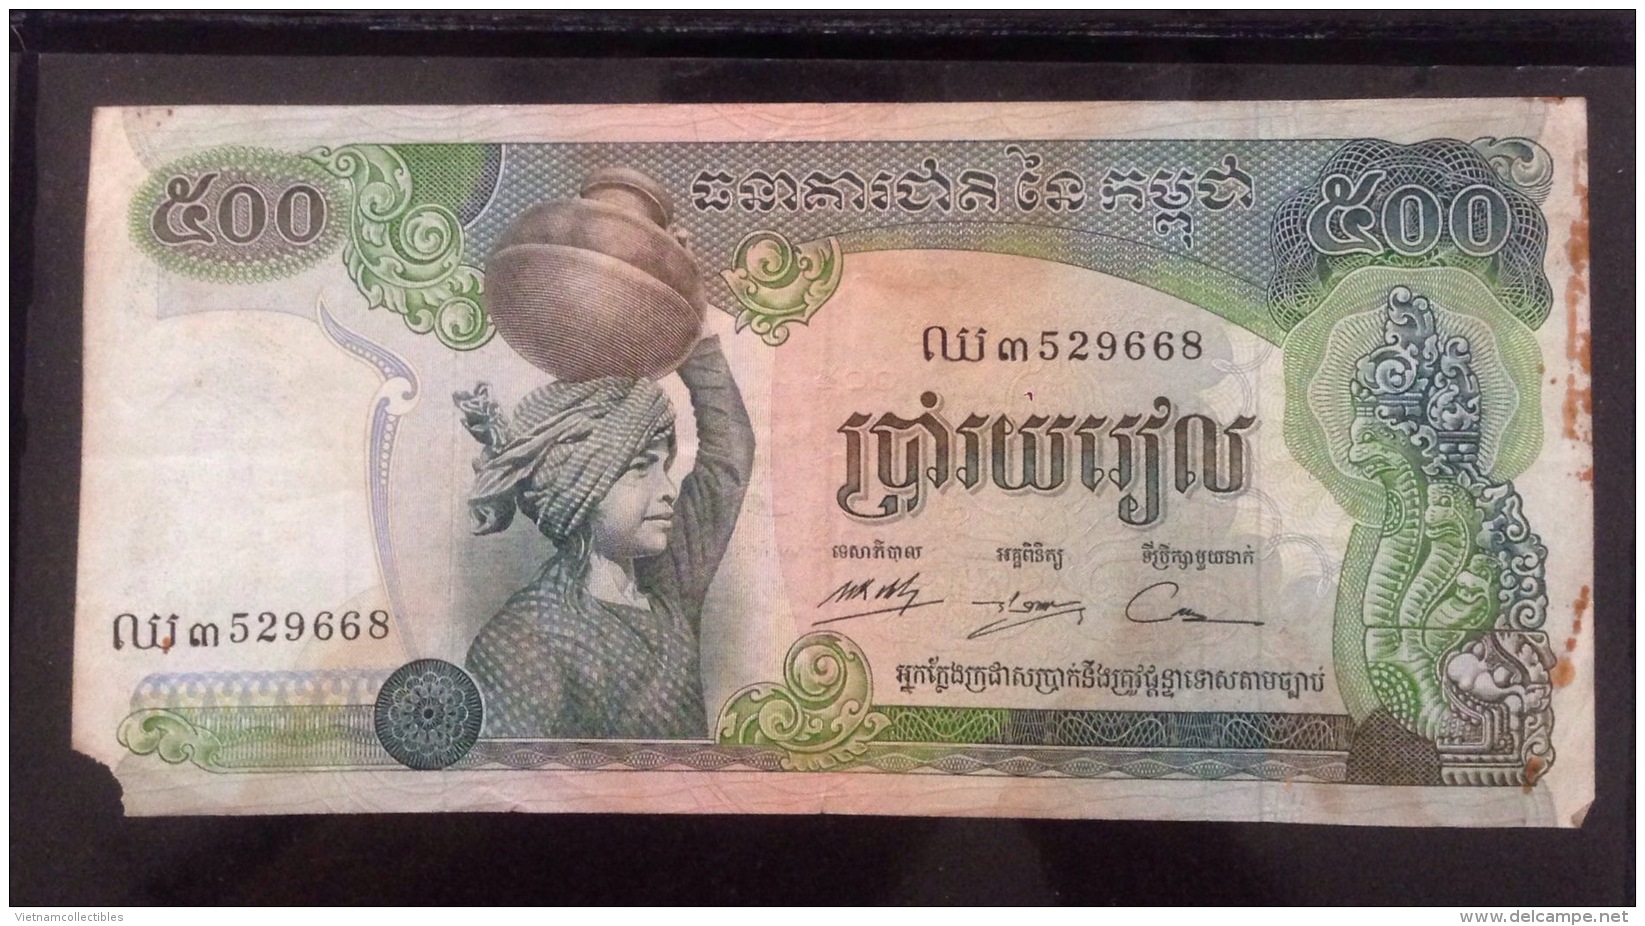 Cambodia Cambodge 500 Riels VF Banknote 1974 / 02 Photo - Cambodia